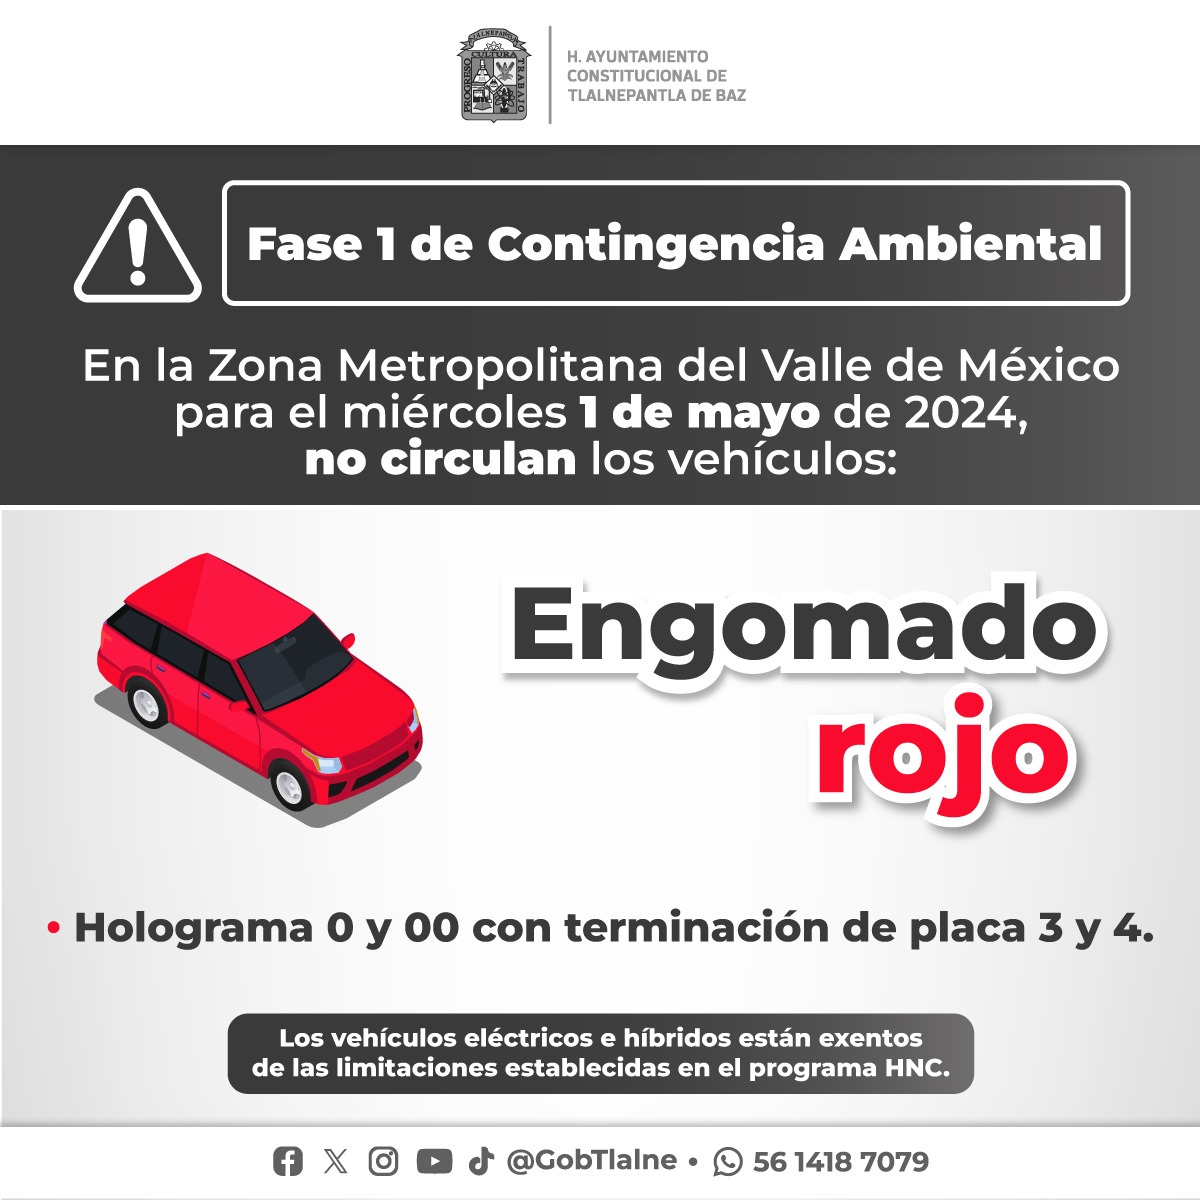 #IMPORTANTE Derivado de la contingencia ambiental en la #ZMVM, se activa el programa #HoyNoCircula, aplicable para vehículos con engomado rojo, hologramas 0 y 00, con terminación de placas 3 y 4.